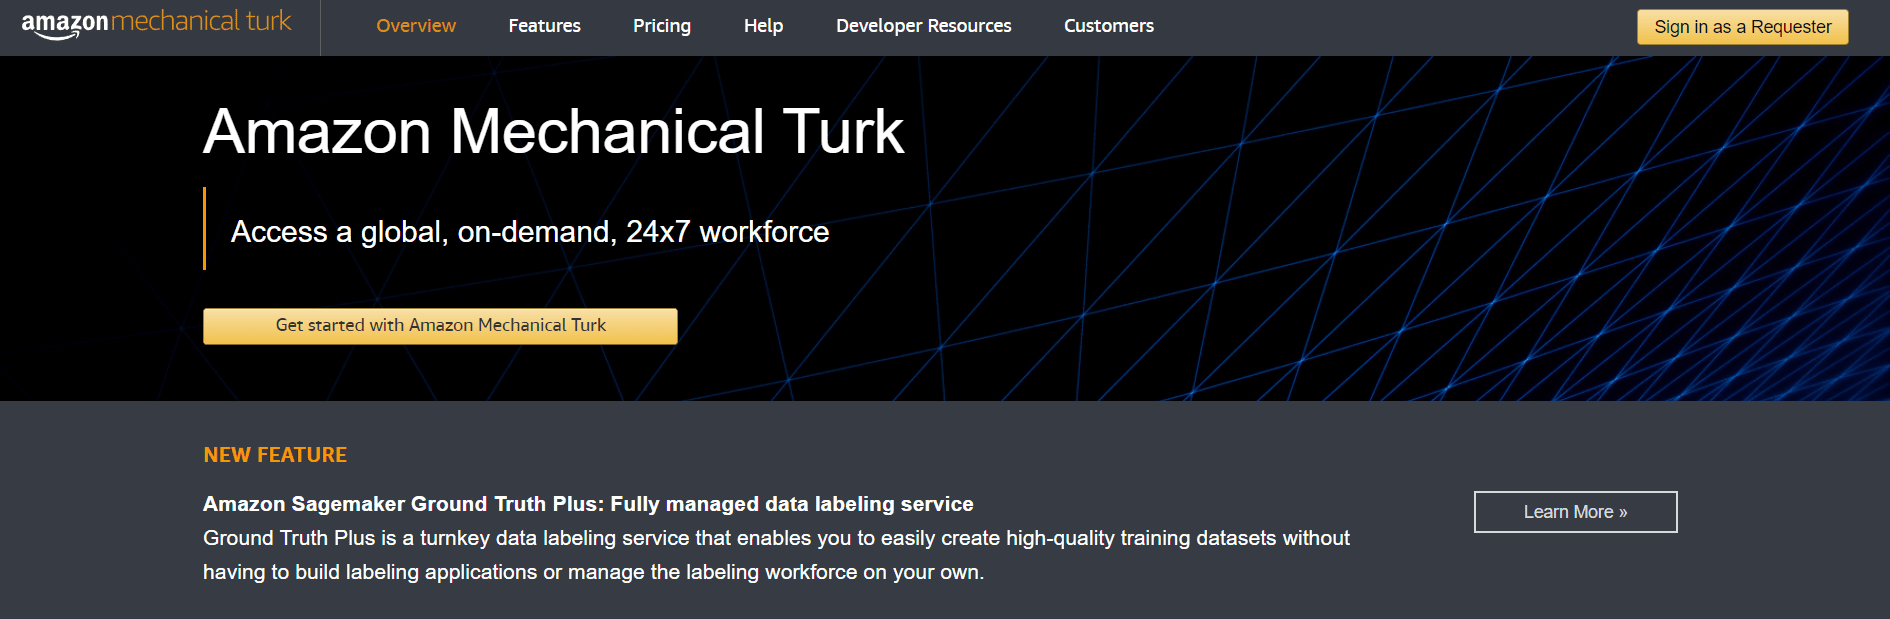 Amazon Mechanical Turk Overview